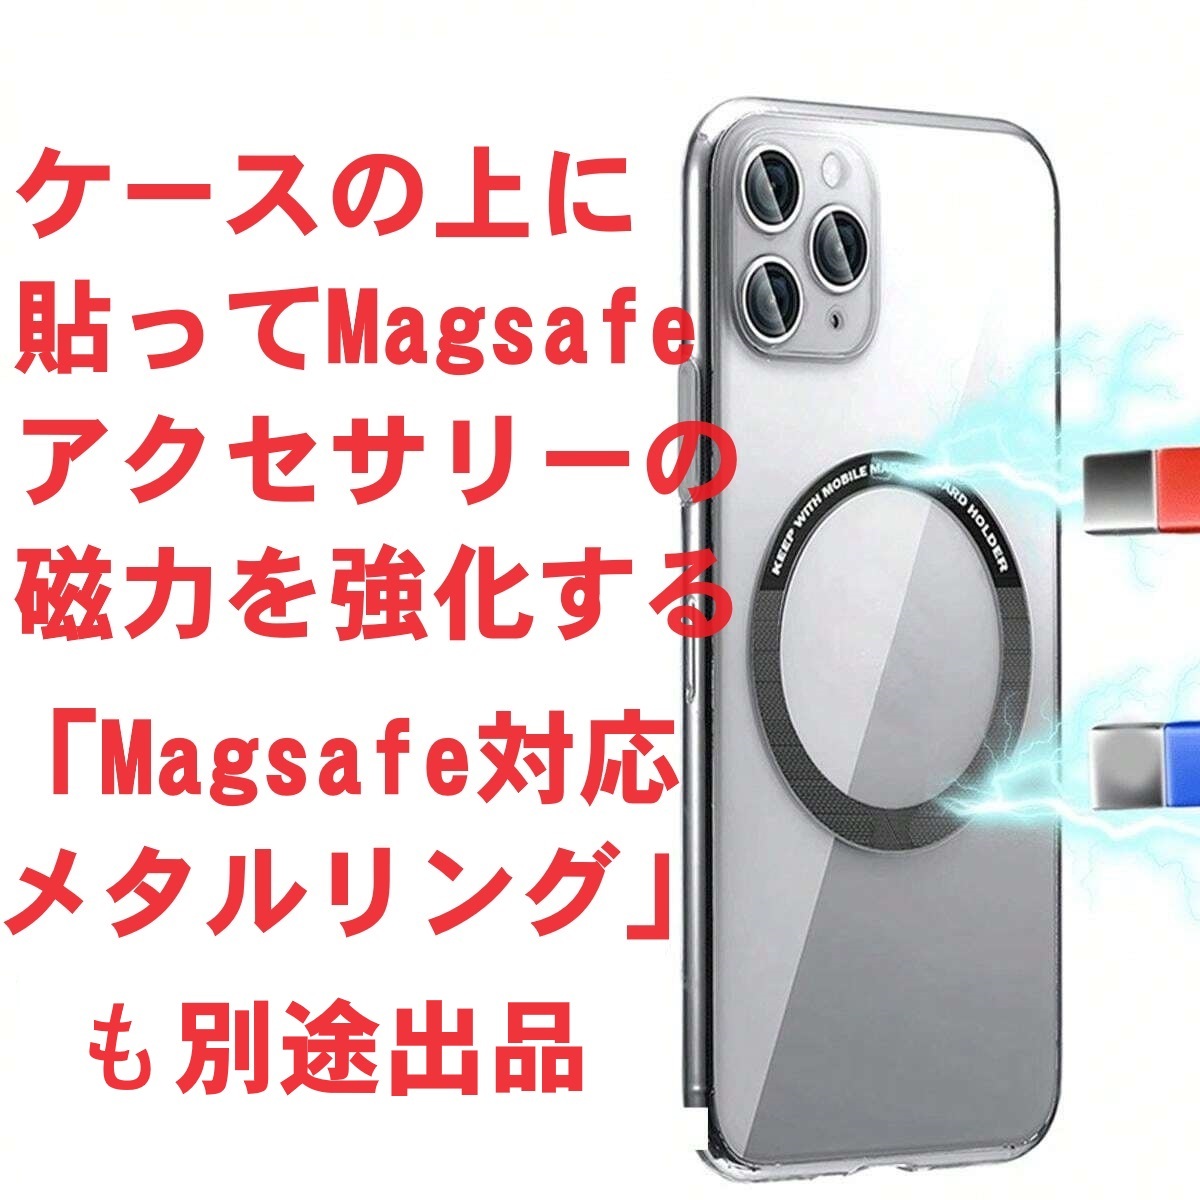 20W 白3個セット マグセーフ充電器 アイフォン ワイヤレス充電器 アップル iPhone Magsafe Apple アンドロイド スマホ 急速 互換品 純正X_画像5